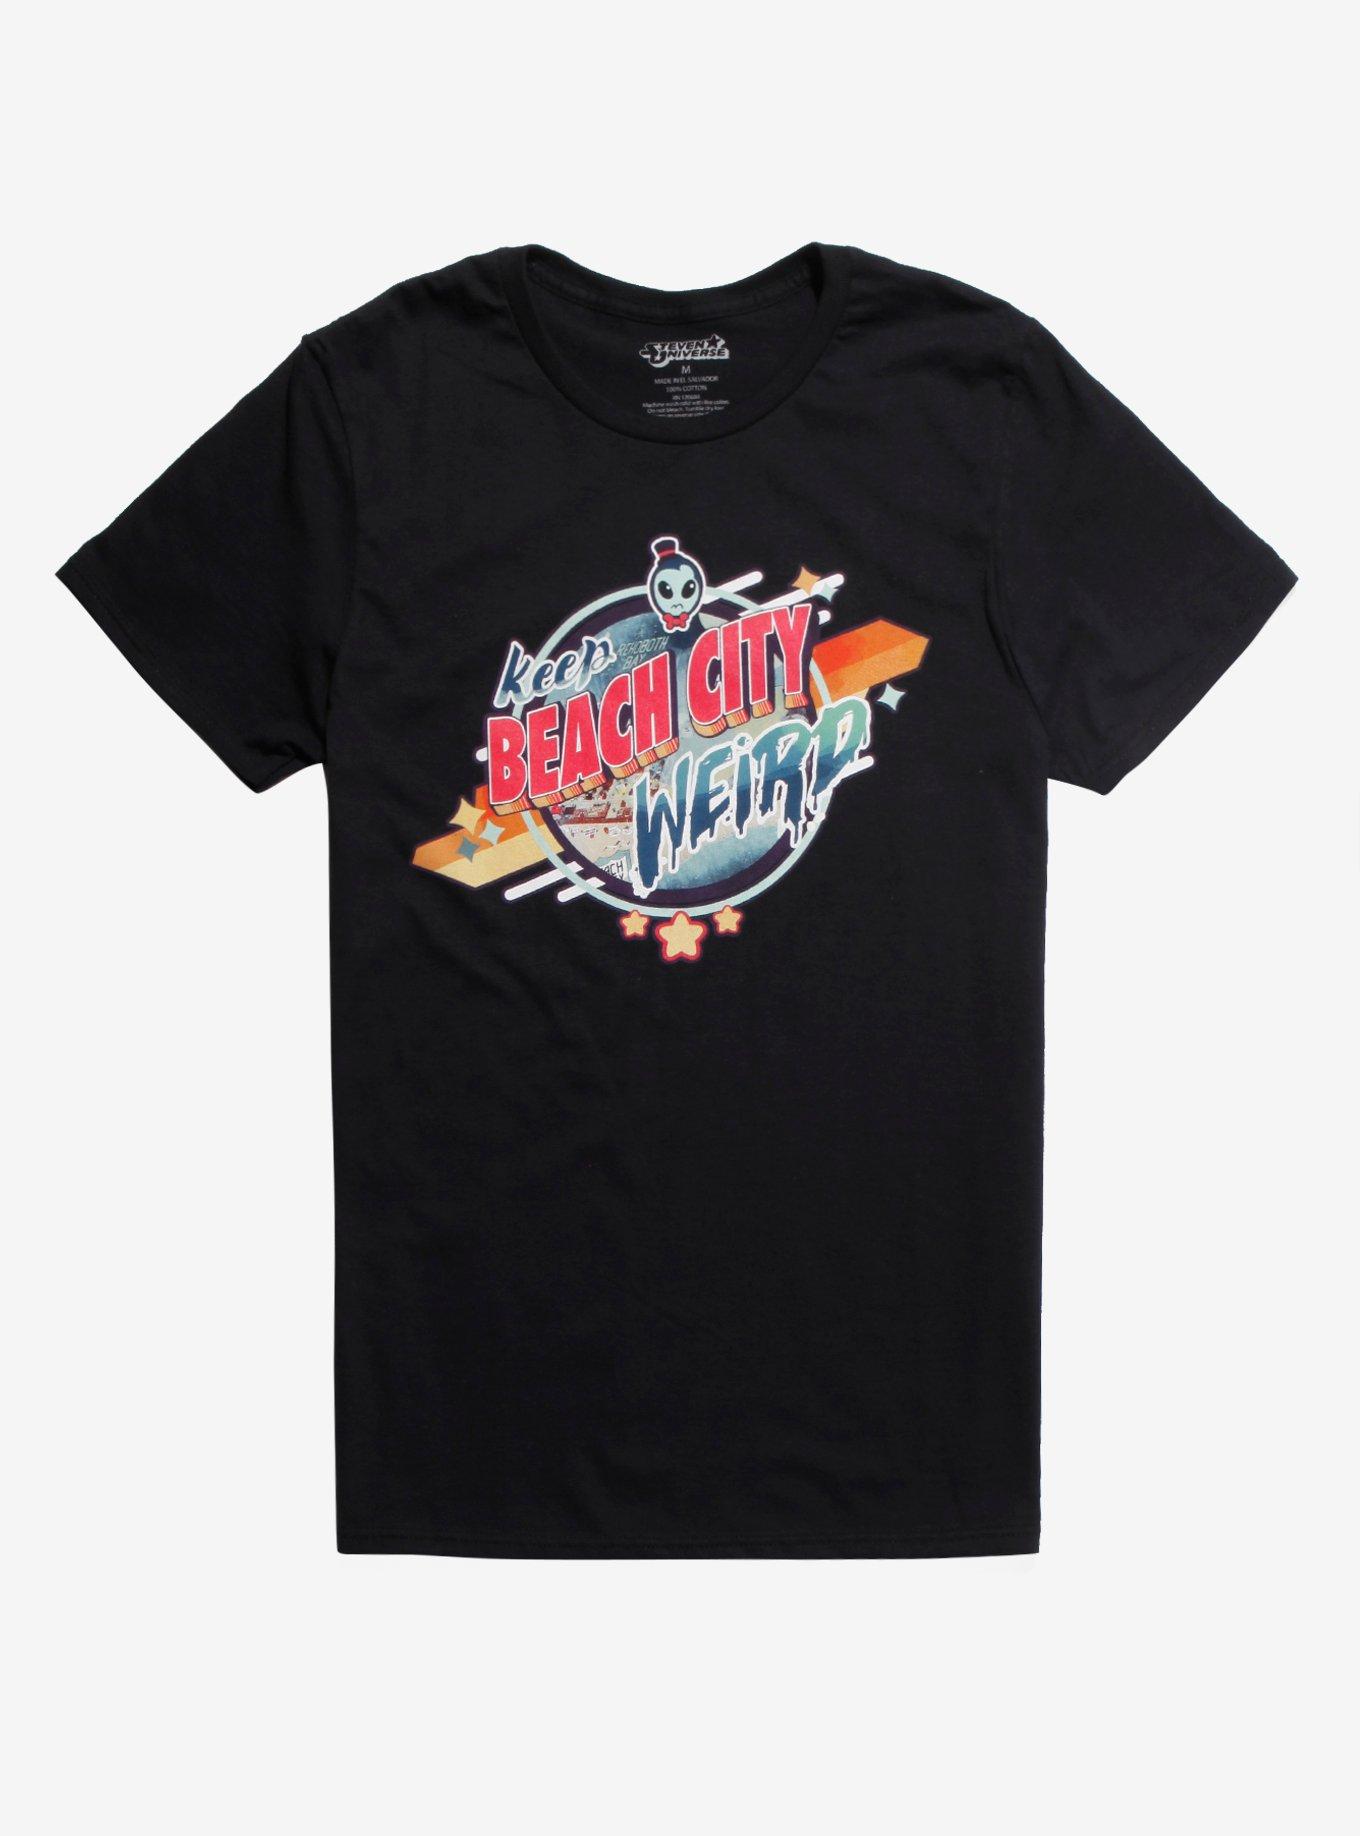 Steven Universe Keep Beach City Weird T-Shirt | Hot Topic